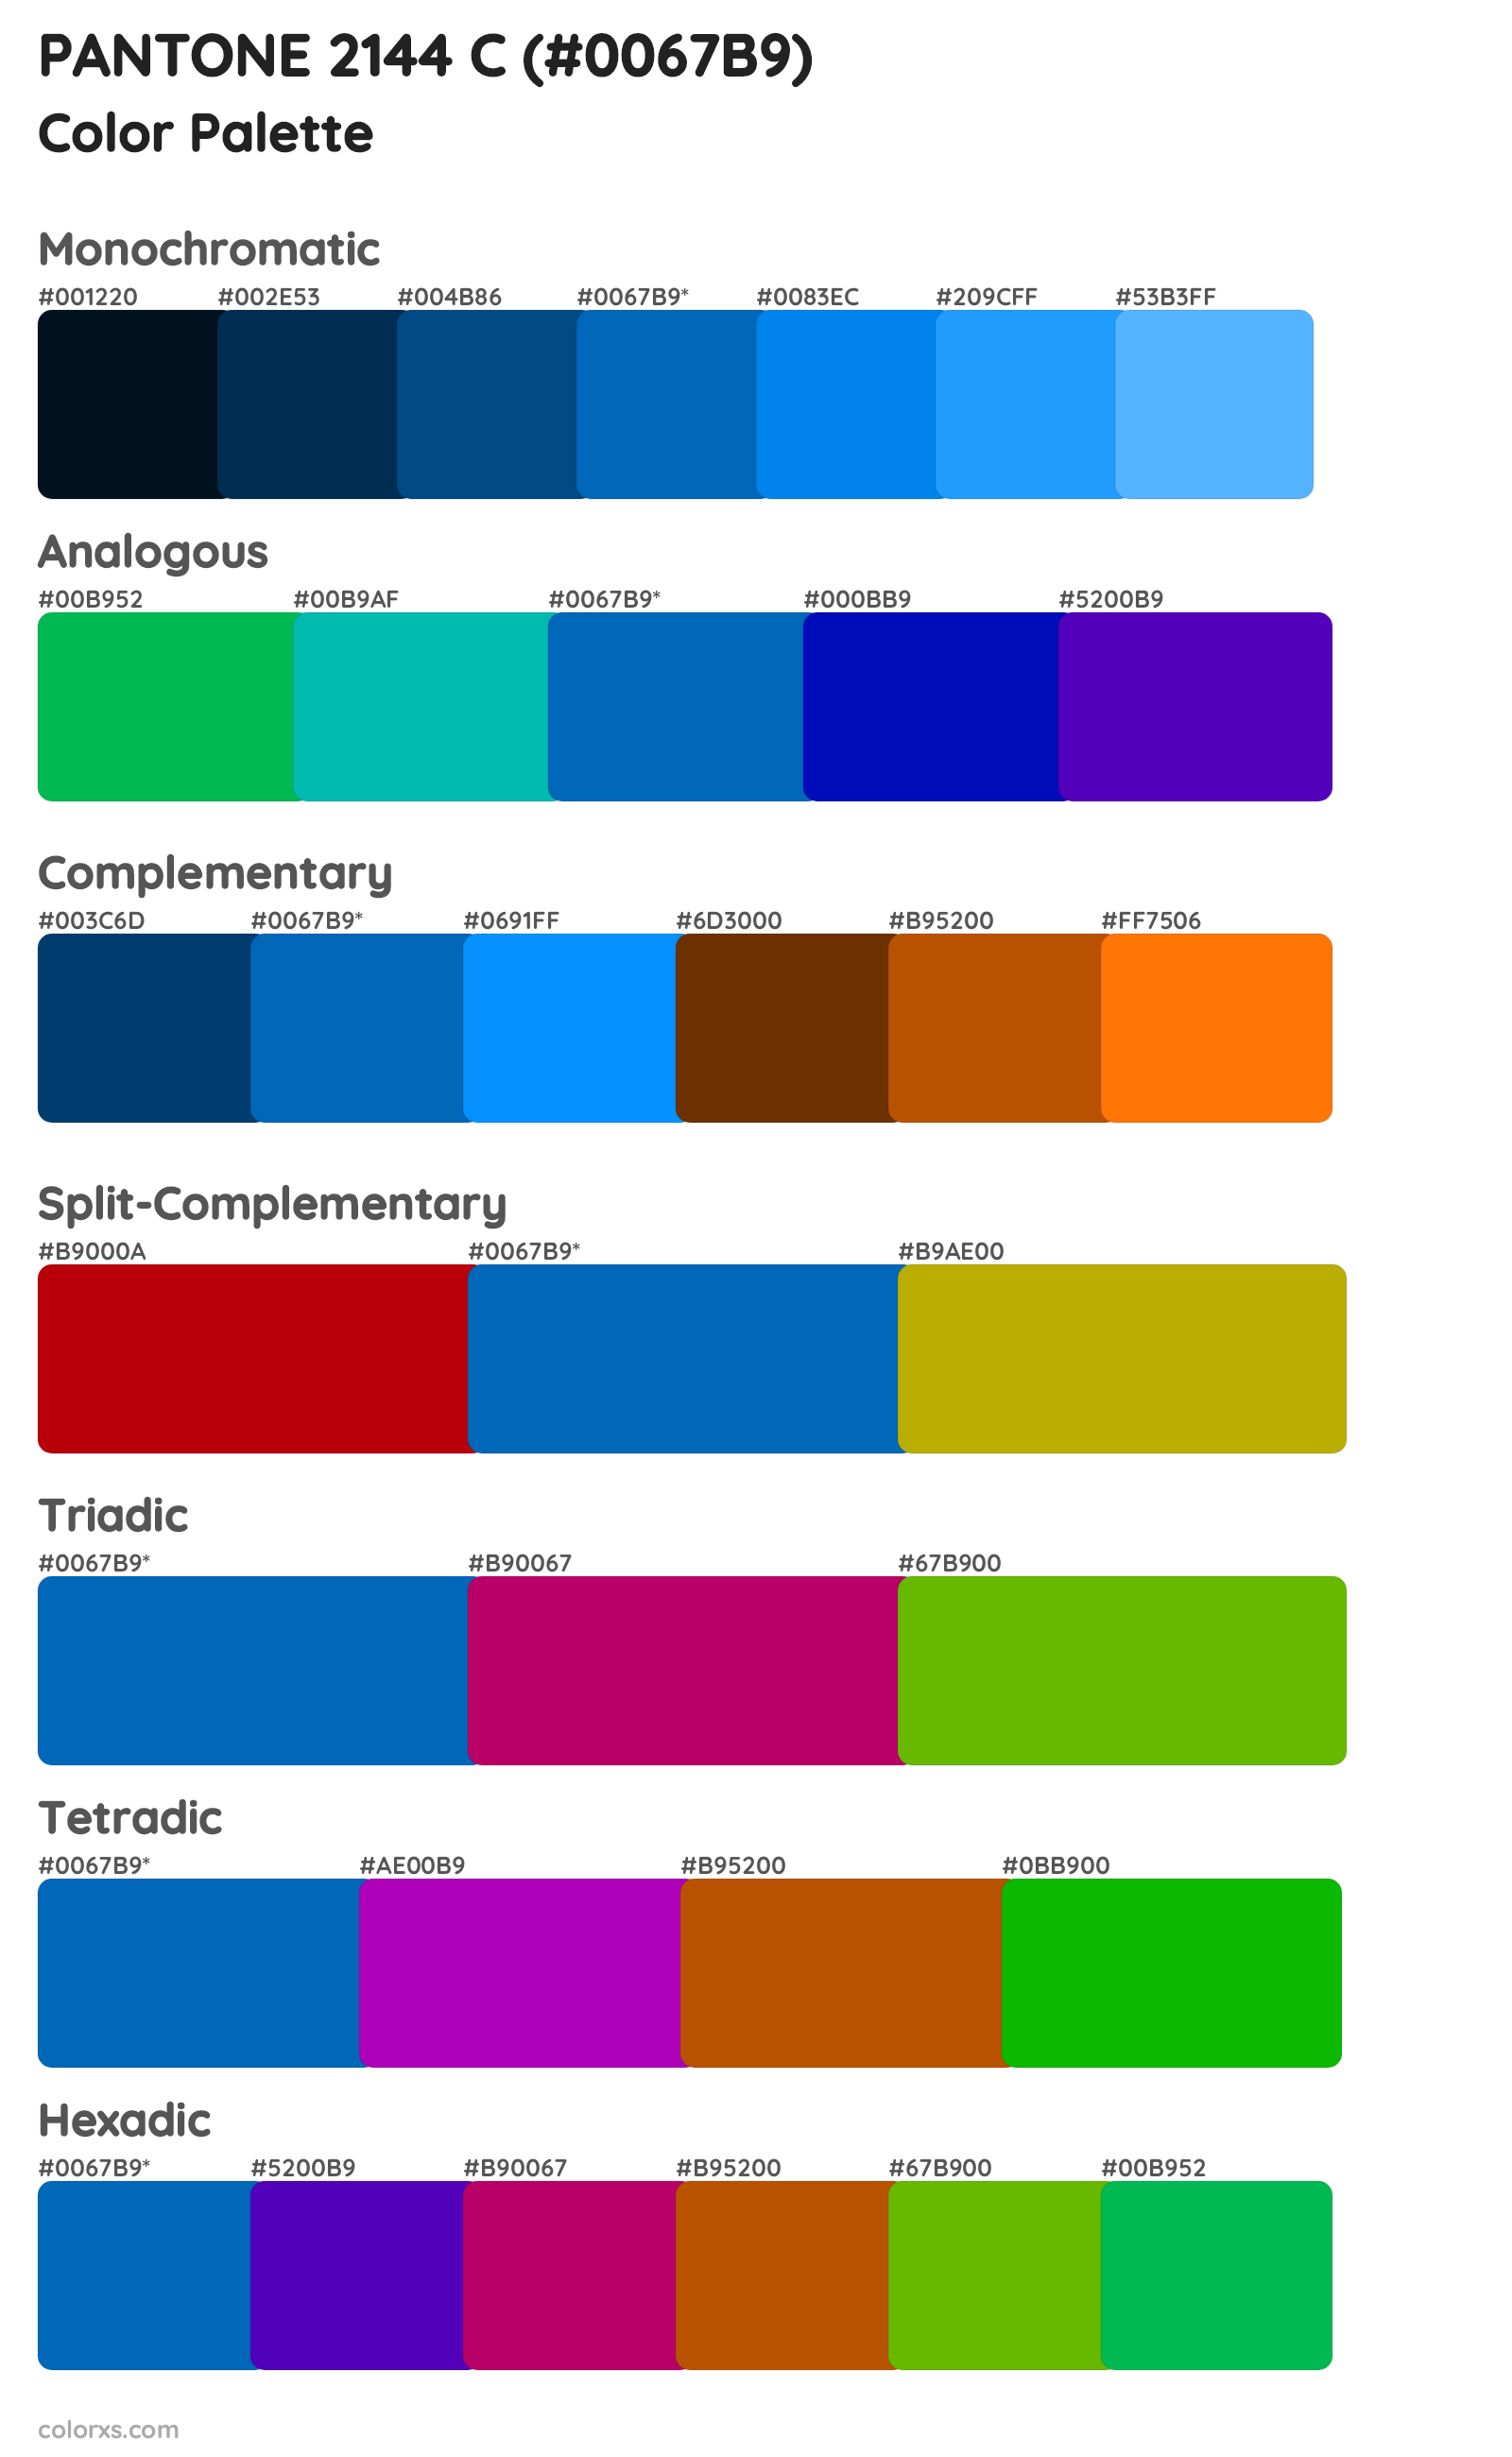 PANTONE 2144 C Color Scheme Palettes